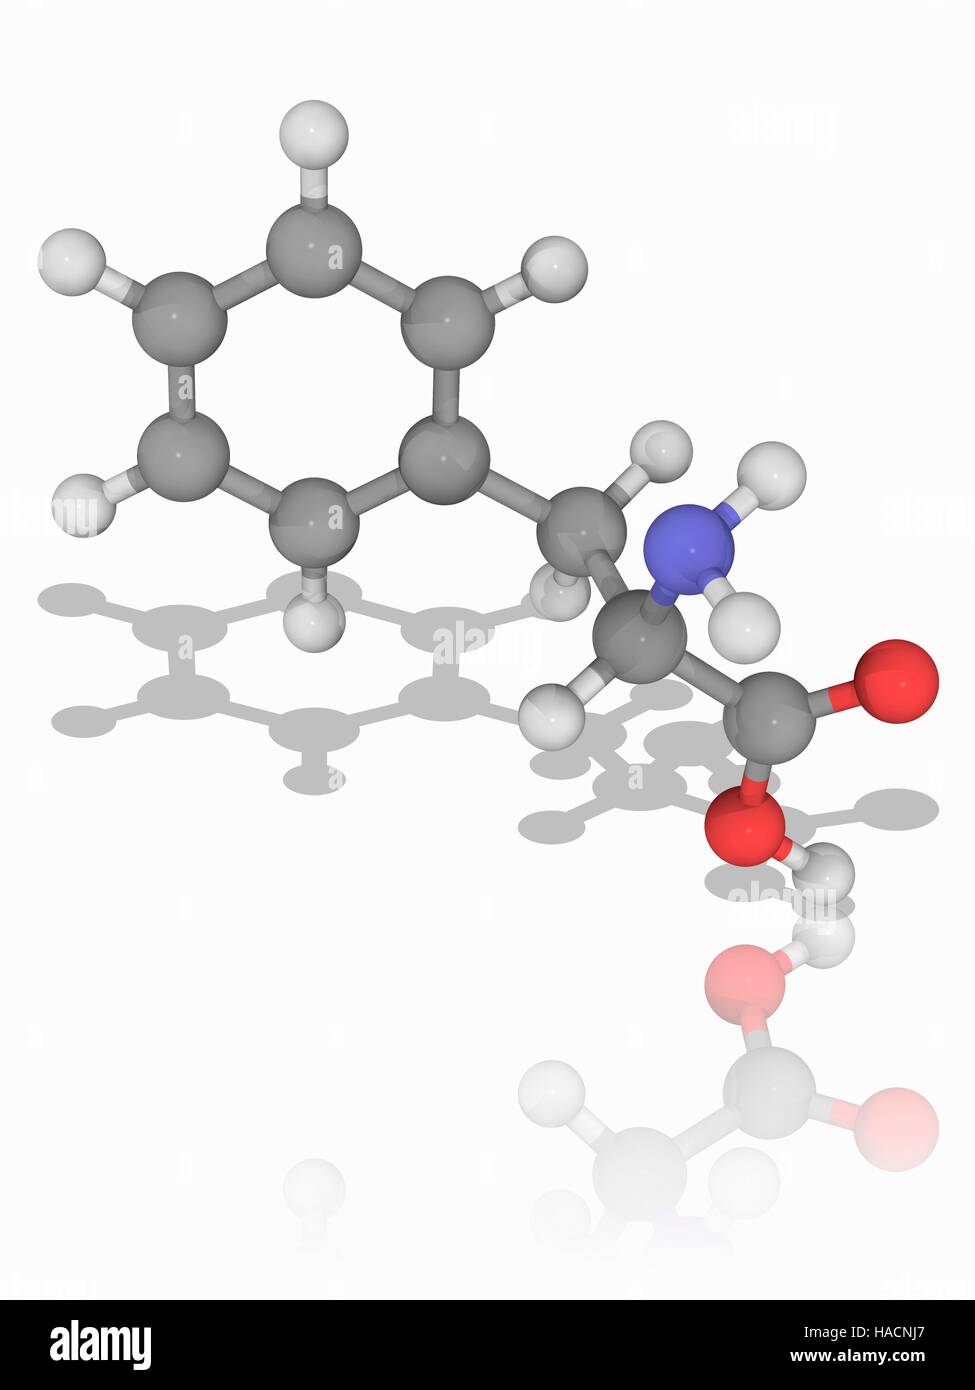 Phenylalanin. Molekulares Modell des wesentlichen Alpha-amino Acid Phenylalanin (C9. H11. N.O2), einer der 20 gemeinsame Aminosäuren verwendet, um Form Proteine. Atome als Kugeln dargestellt werden und sind farblich gekennzeichnet: Kohlenstoff (grau), Wasserstoff (weiß), Stickstoff (blau) und Sauerstoff (rot). Abbildung. Stockfoto